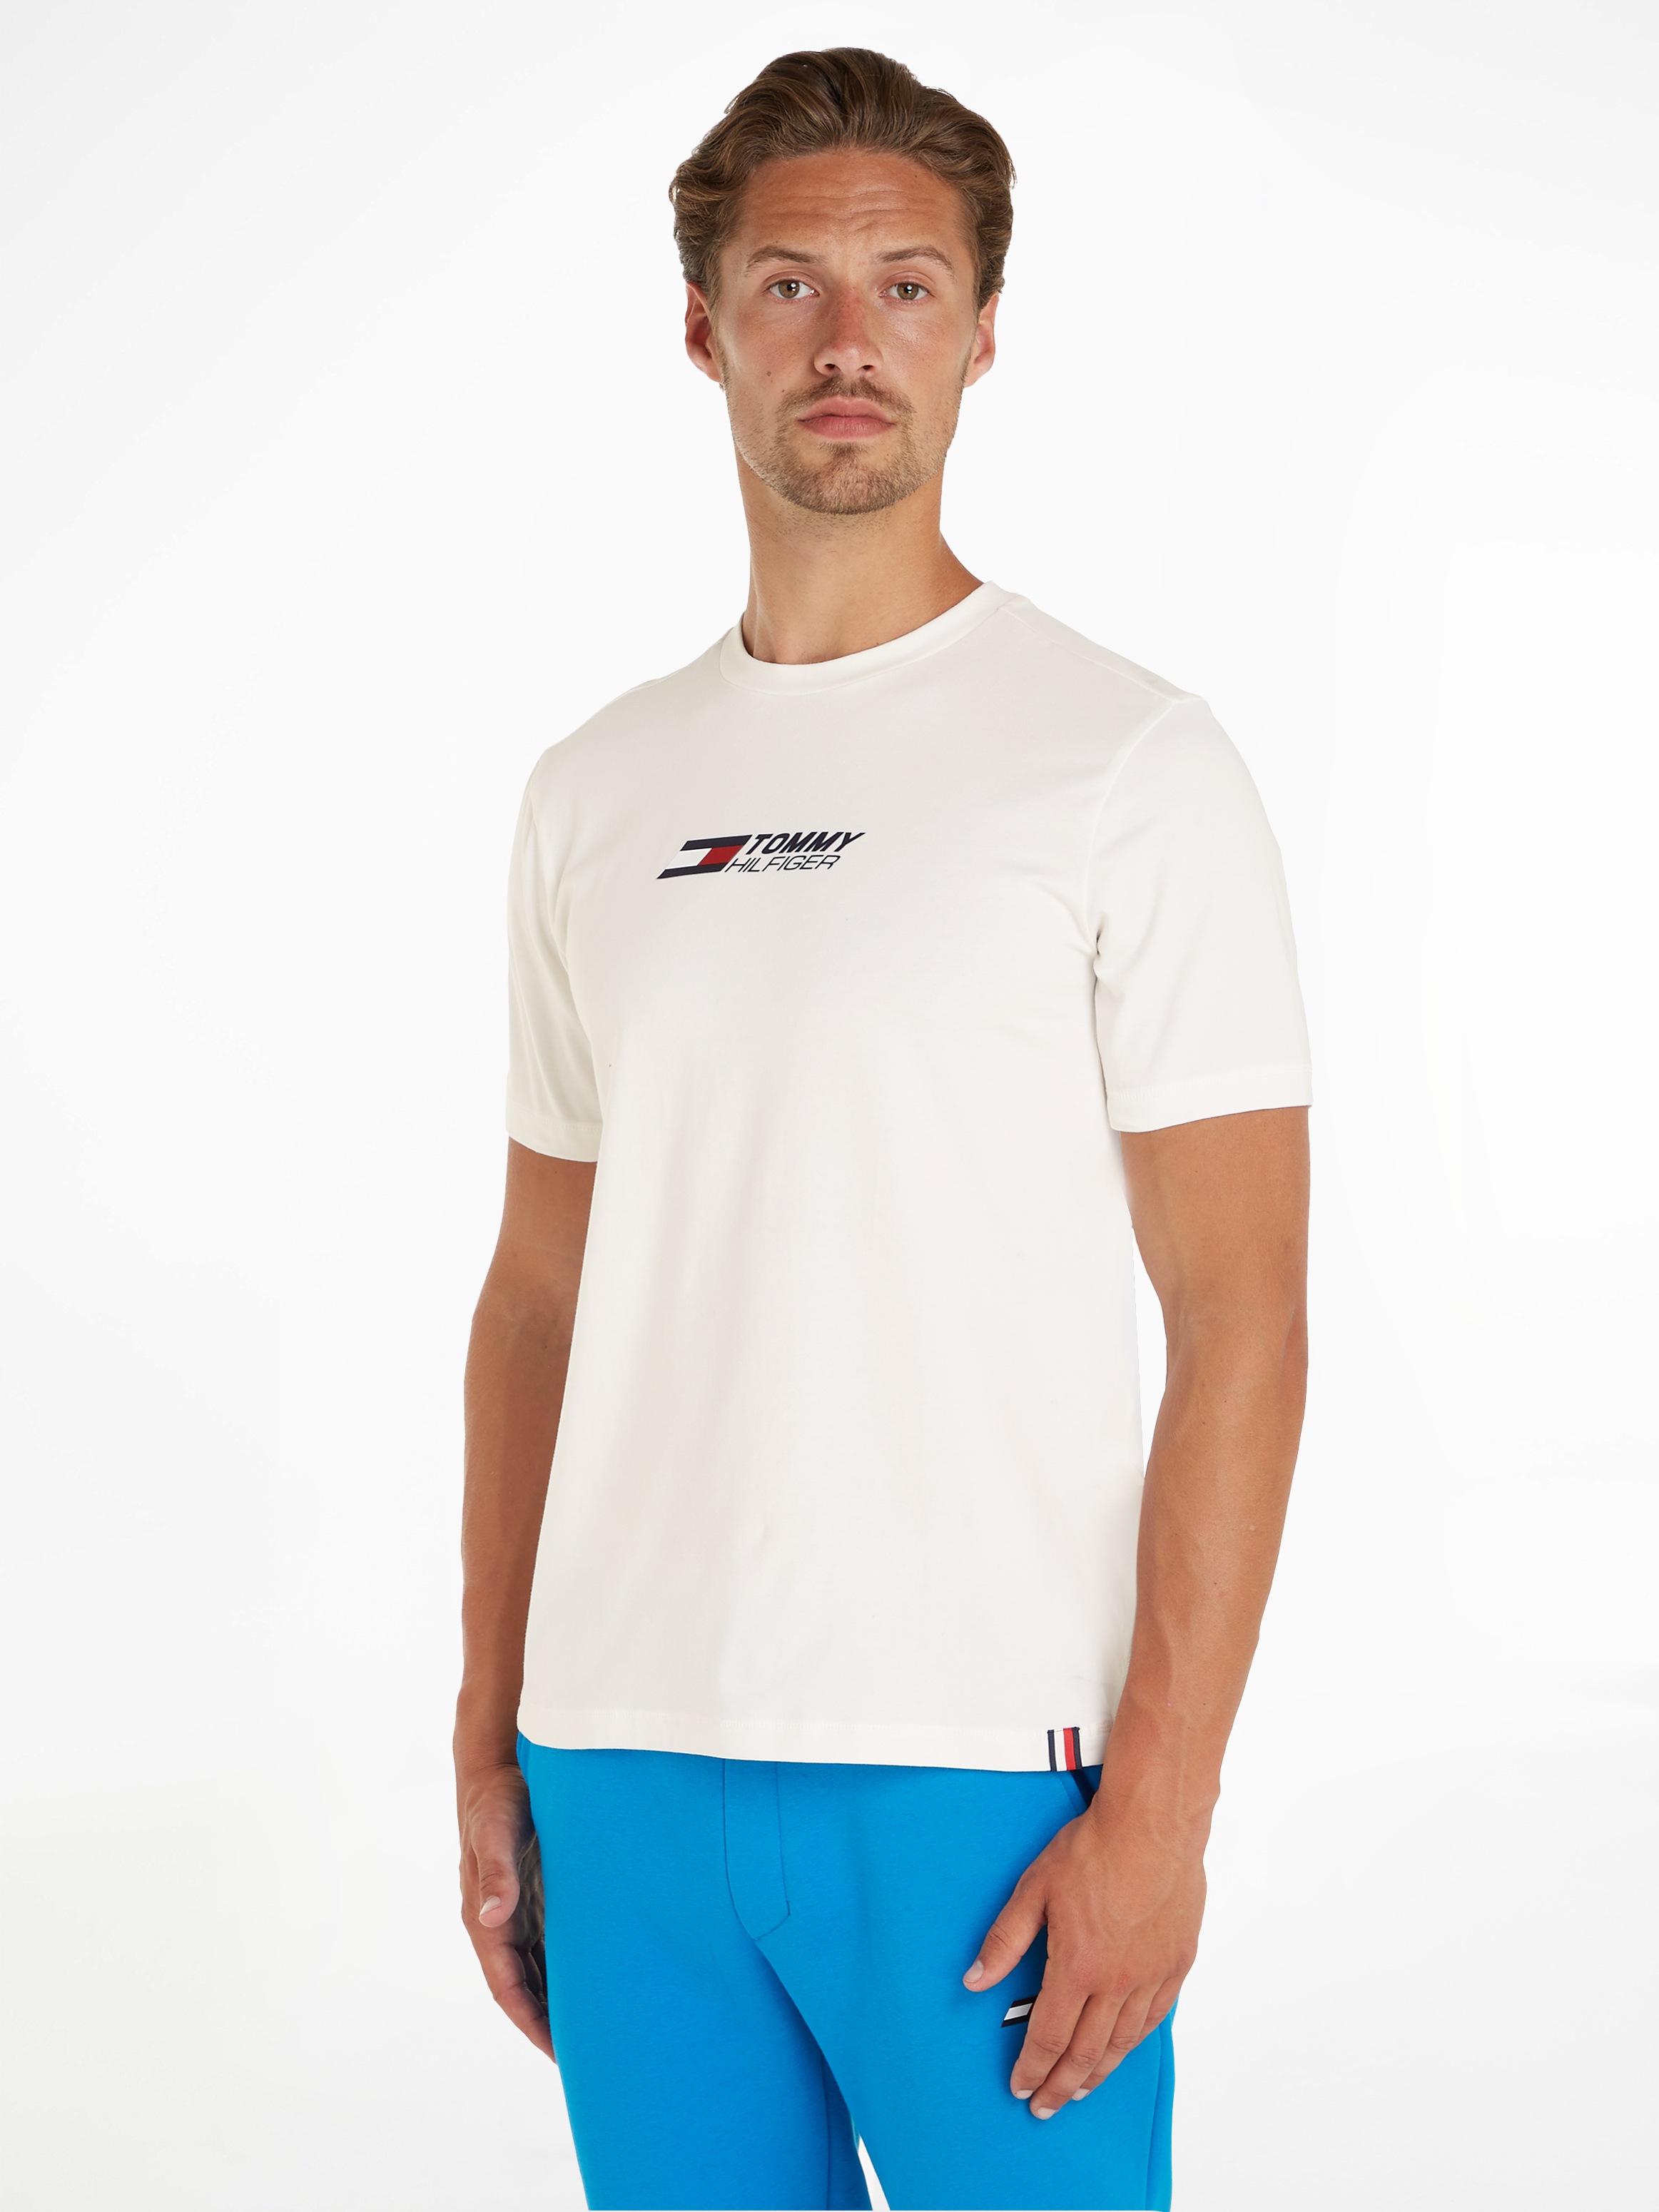 Sport OTTO Hilfiger Logodruck Tommy Hilfiger shoppen der bei T-Shirt online TEE«, »ESSENTIAL LOGO Brust Tommy mit auf BIG